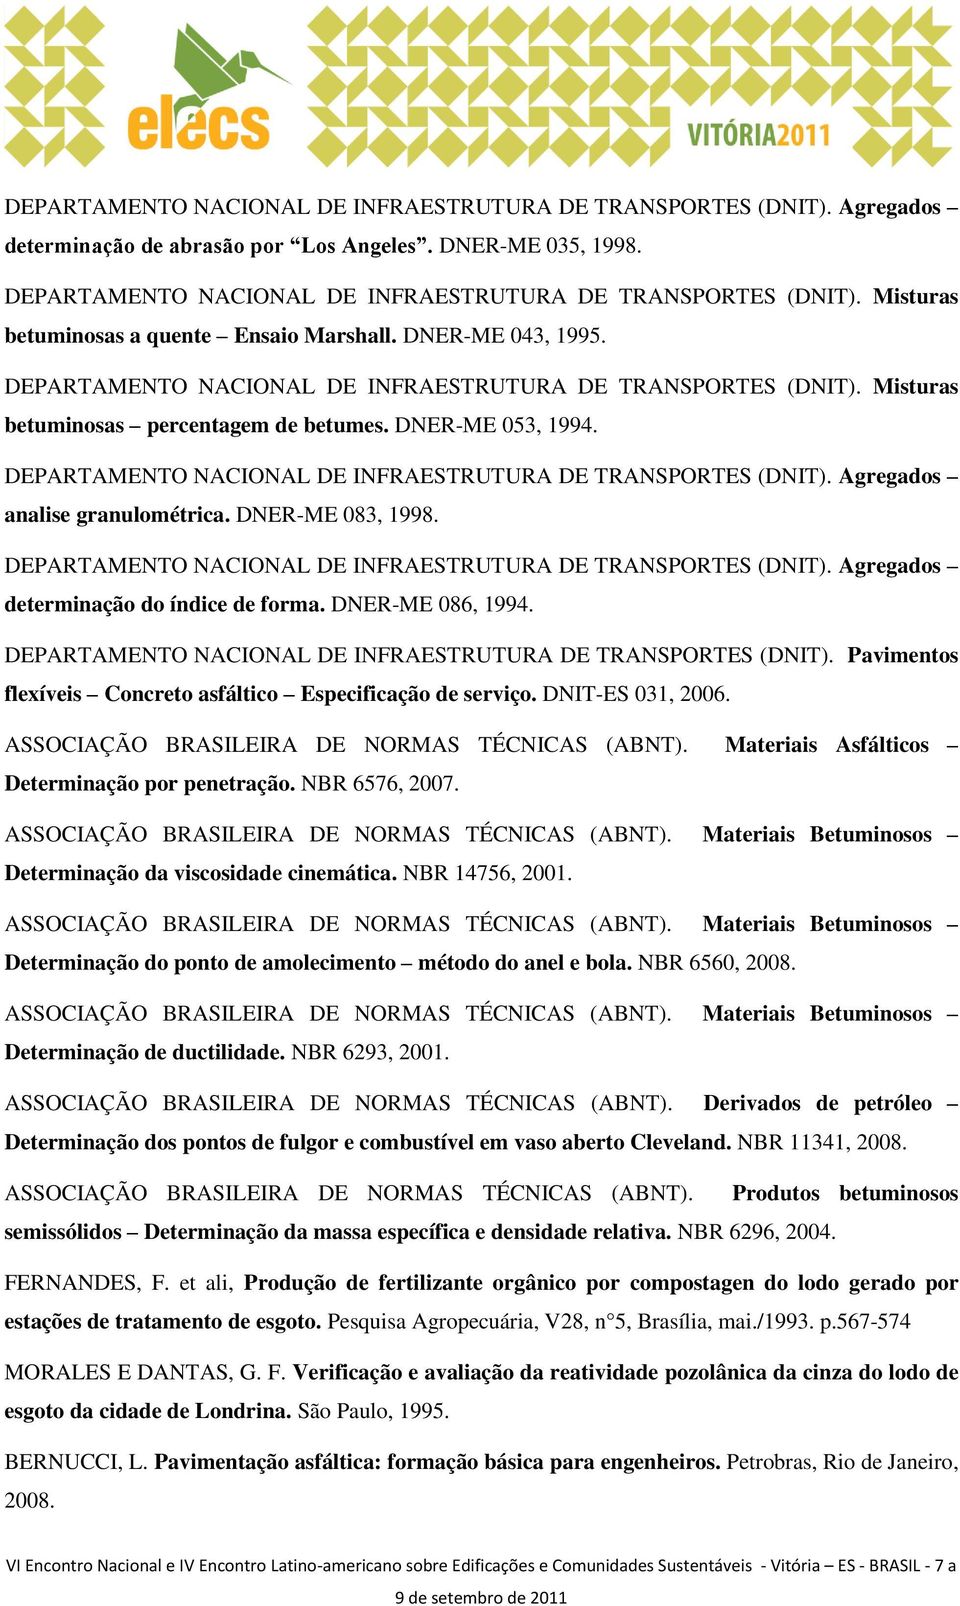 DEPARTAMENTO CIOL DE INFRAESTRUTURA DE TRANSPORTES (DNIT). Agregados analise granulométrica. DNER-ME 083, 1998. DEPARTAMENTO CIOL DE INFRAESTRUTURA DE TRANSPORTES (DNIT).